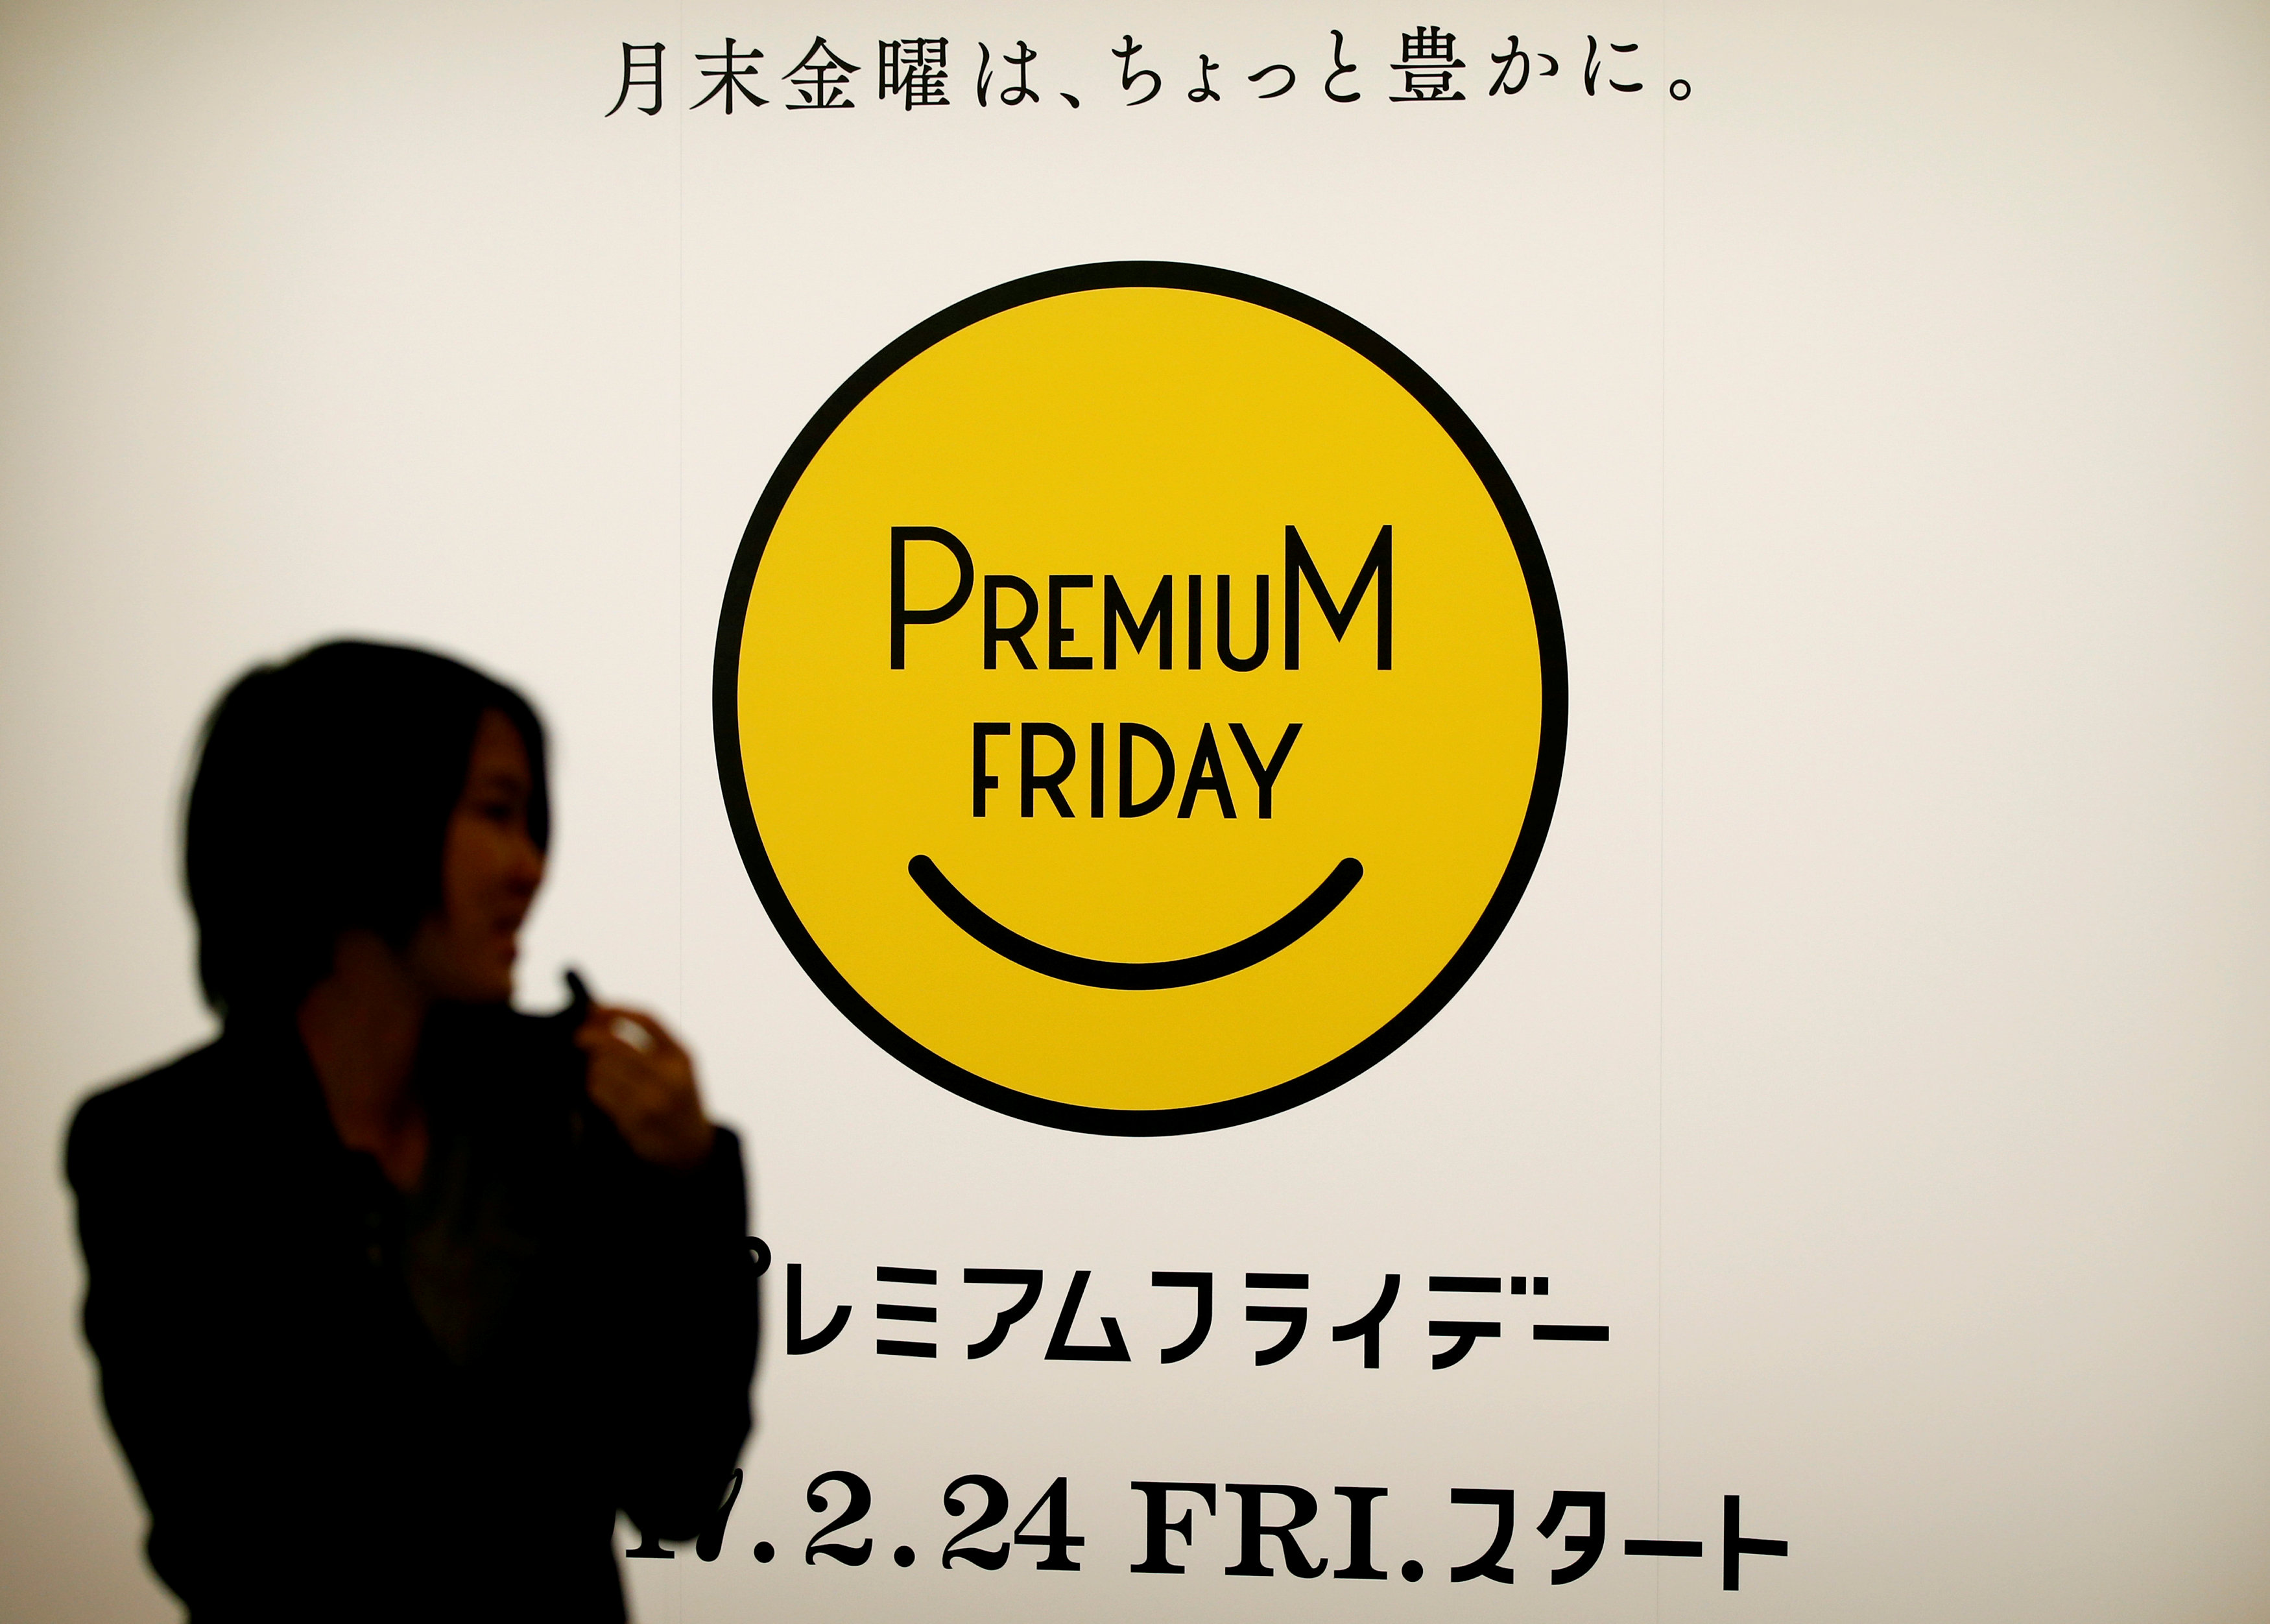 Την Premium Friday καθιερώνει η Ιαπωνία